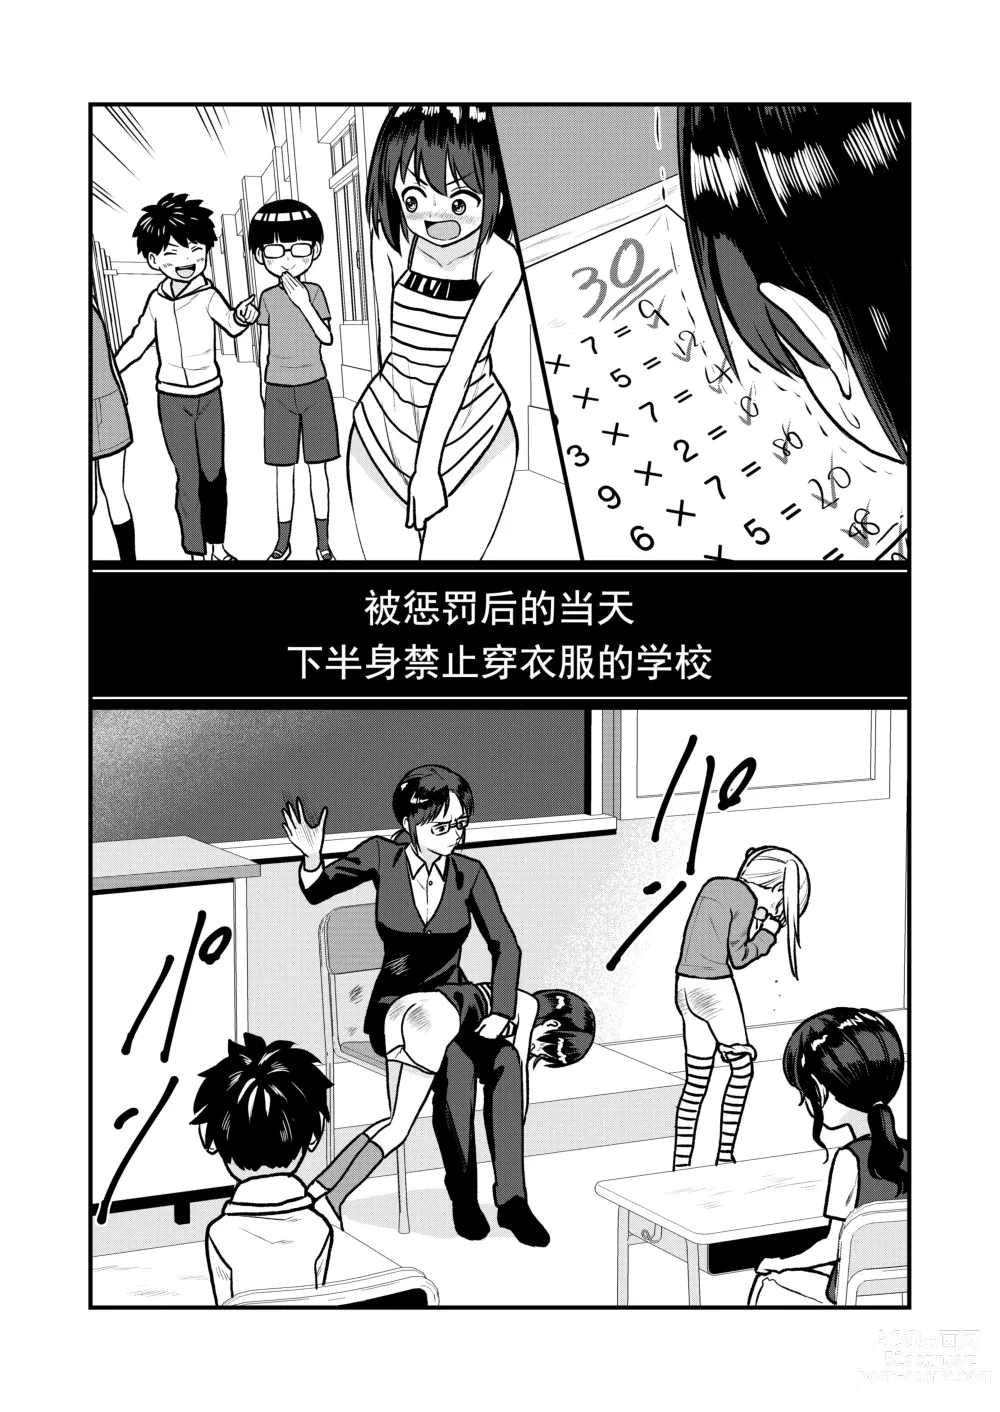 Page 3 of doujinshi 被惩罚后的当天,下半身禁止穿衣服的学校